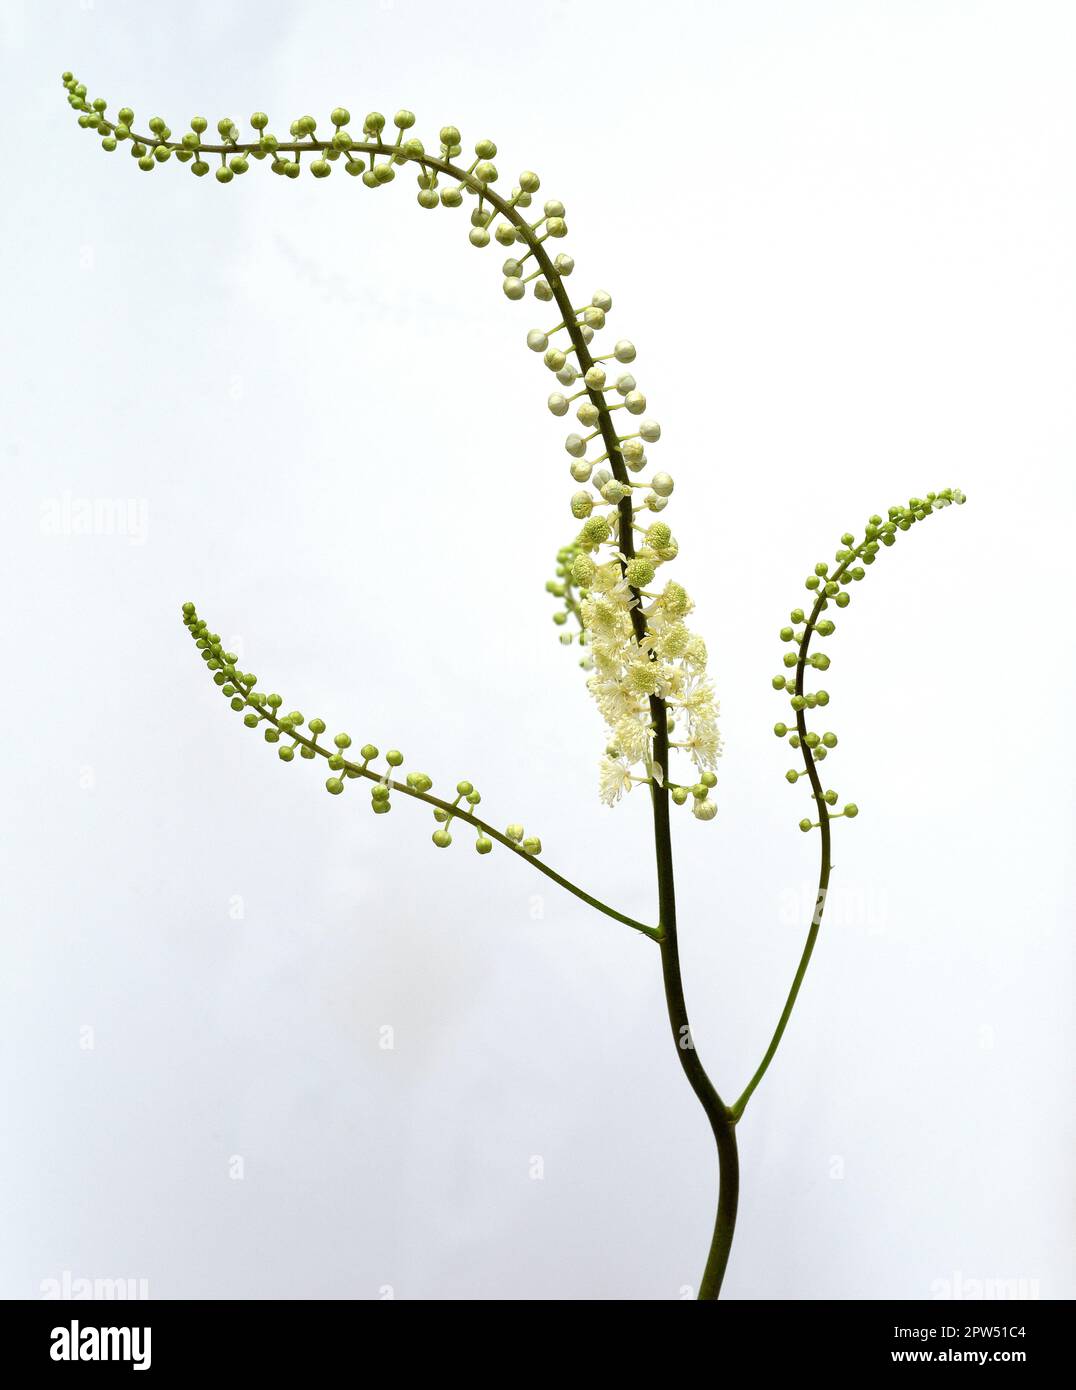 Traubensilberkerze, Cimicifuga racemosa ist eine wichtige  Heil- und Arzneipflanze. Black cohosh, Cimicifuga racemosa is an important medicinal and me Stock Photo